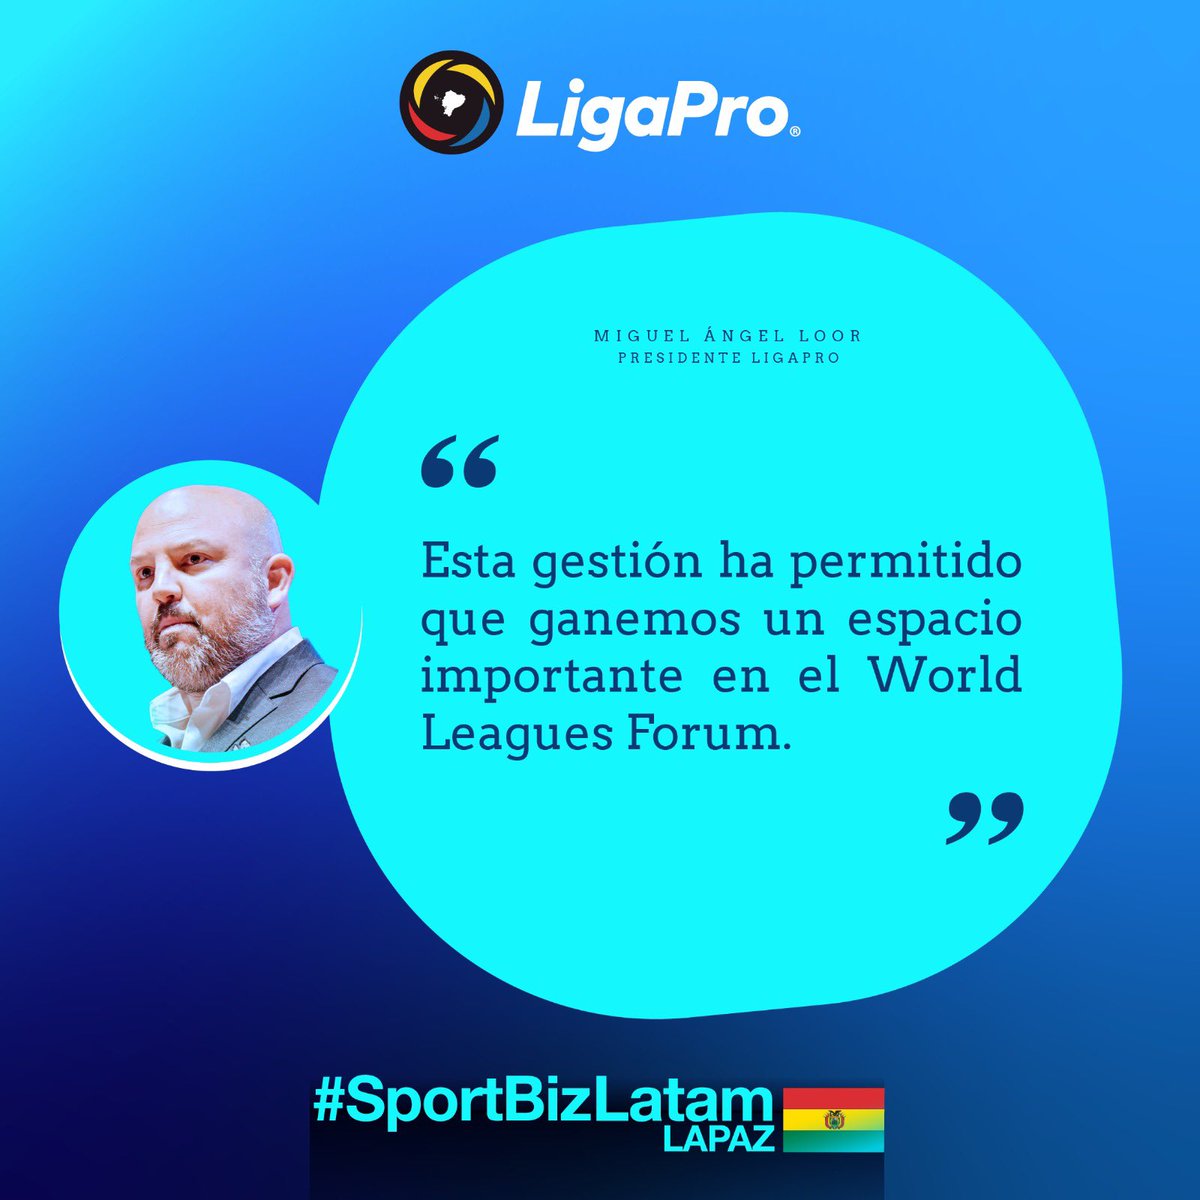 📍El presidente @miguelloor explicó que la base de LigaPro es el orden e invitó a trabajar de esa manera para que todo el continente, en un futuro, sea una verdadera potencia 💪🏻

#LigaProInstitucional #SportBizLatam 🇧🇴🤝🏻🇪🇨